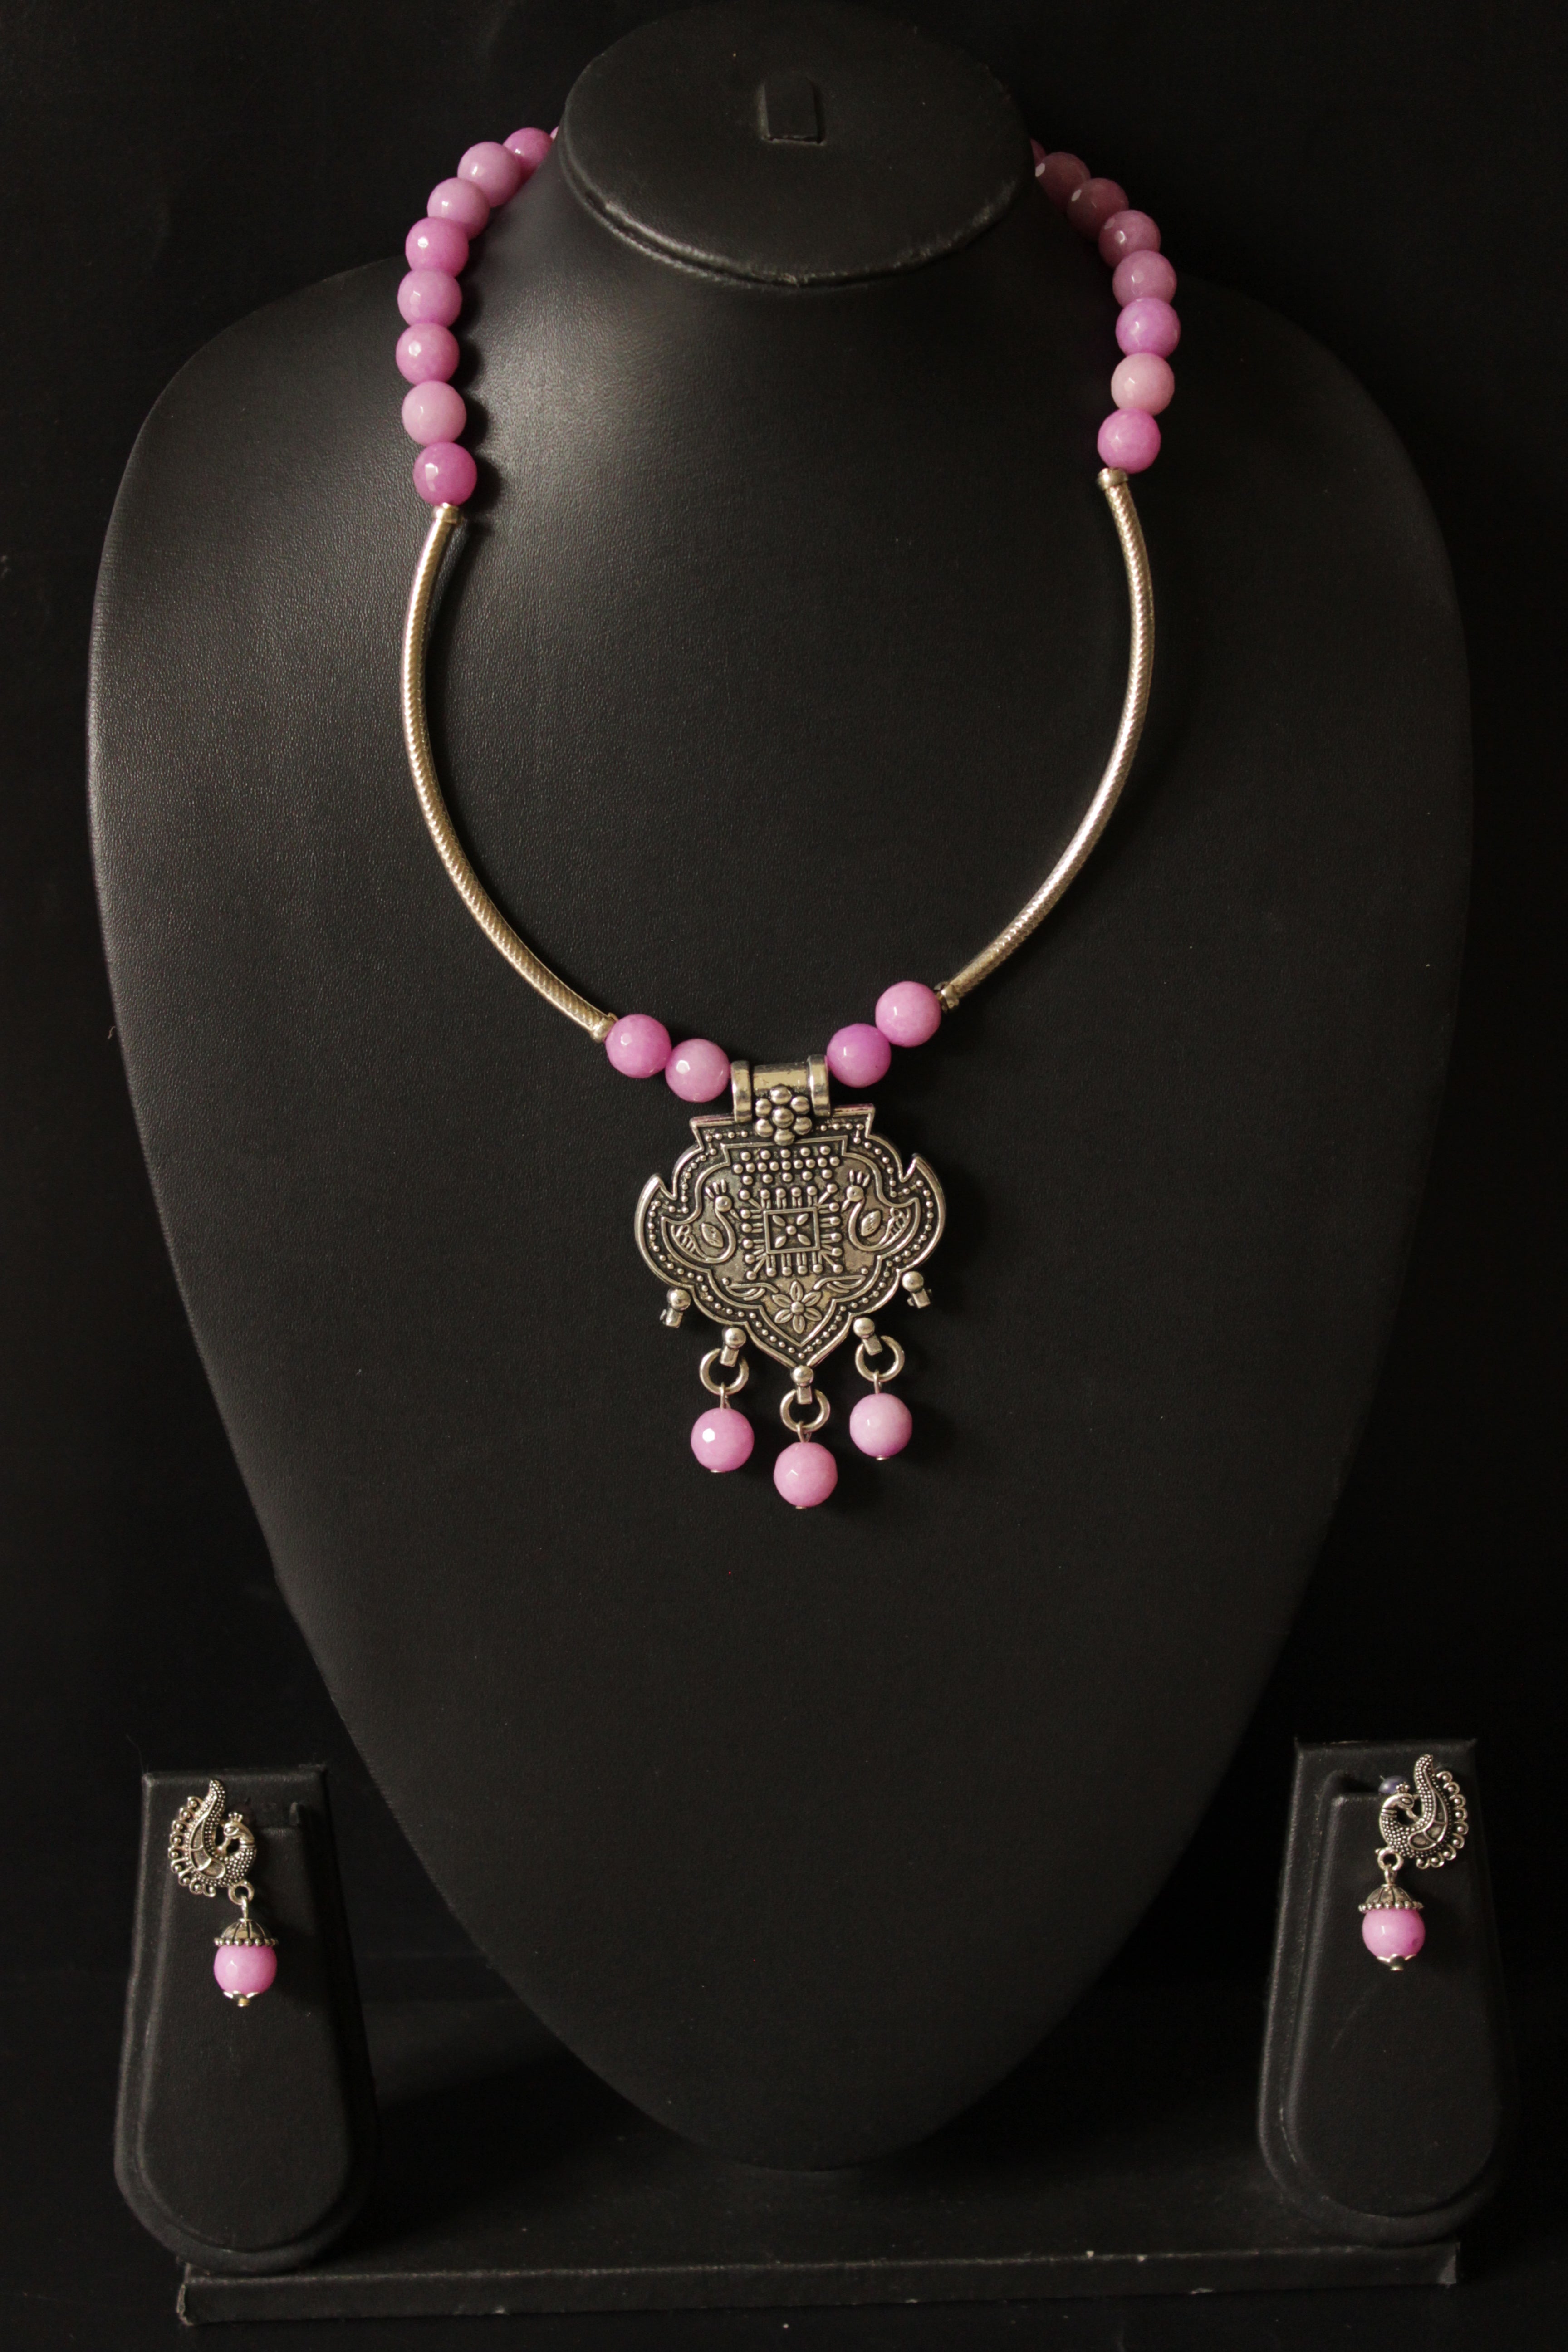 Pink Jade Beads Hasli Necklace Set